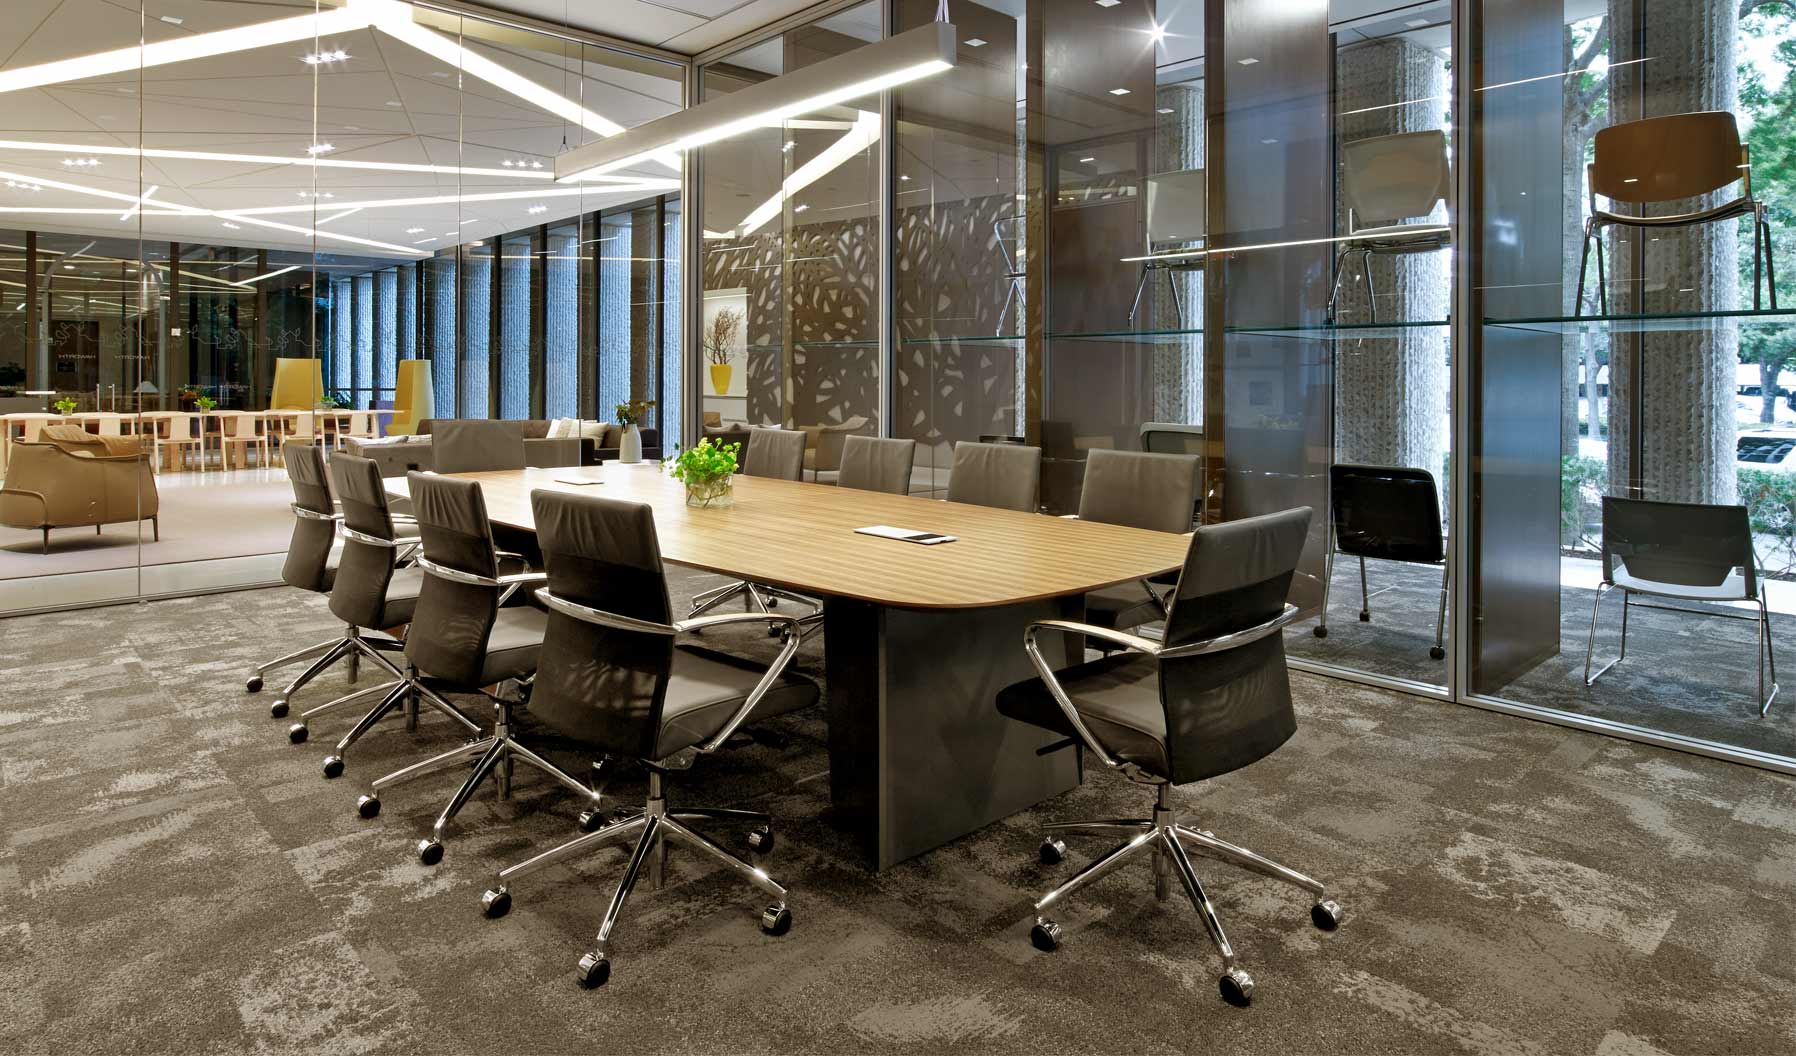 Este espacio para reuniones fomenta la colaboración, además de reforzar una cultura corporativa acogedora y cálida en el trabajo. La proximidad a las sillas lounge y un panel del suelo al techo aportan otro ambiente más allá de la gran cantidad de luz natural que inunda el espacio.